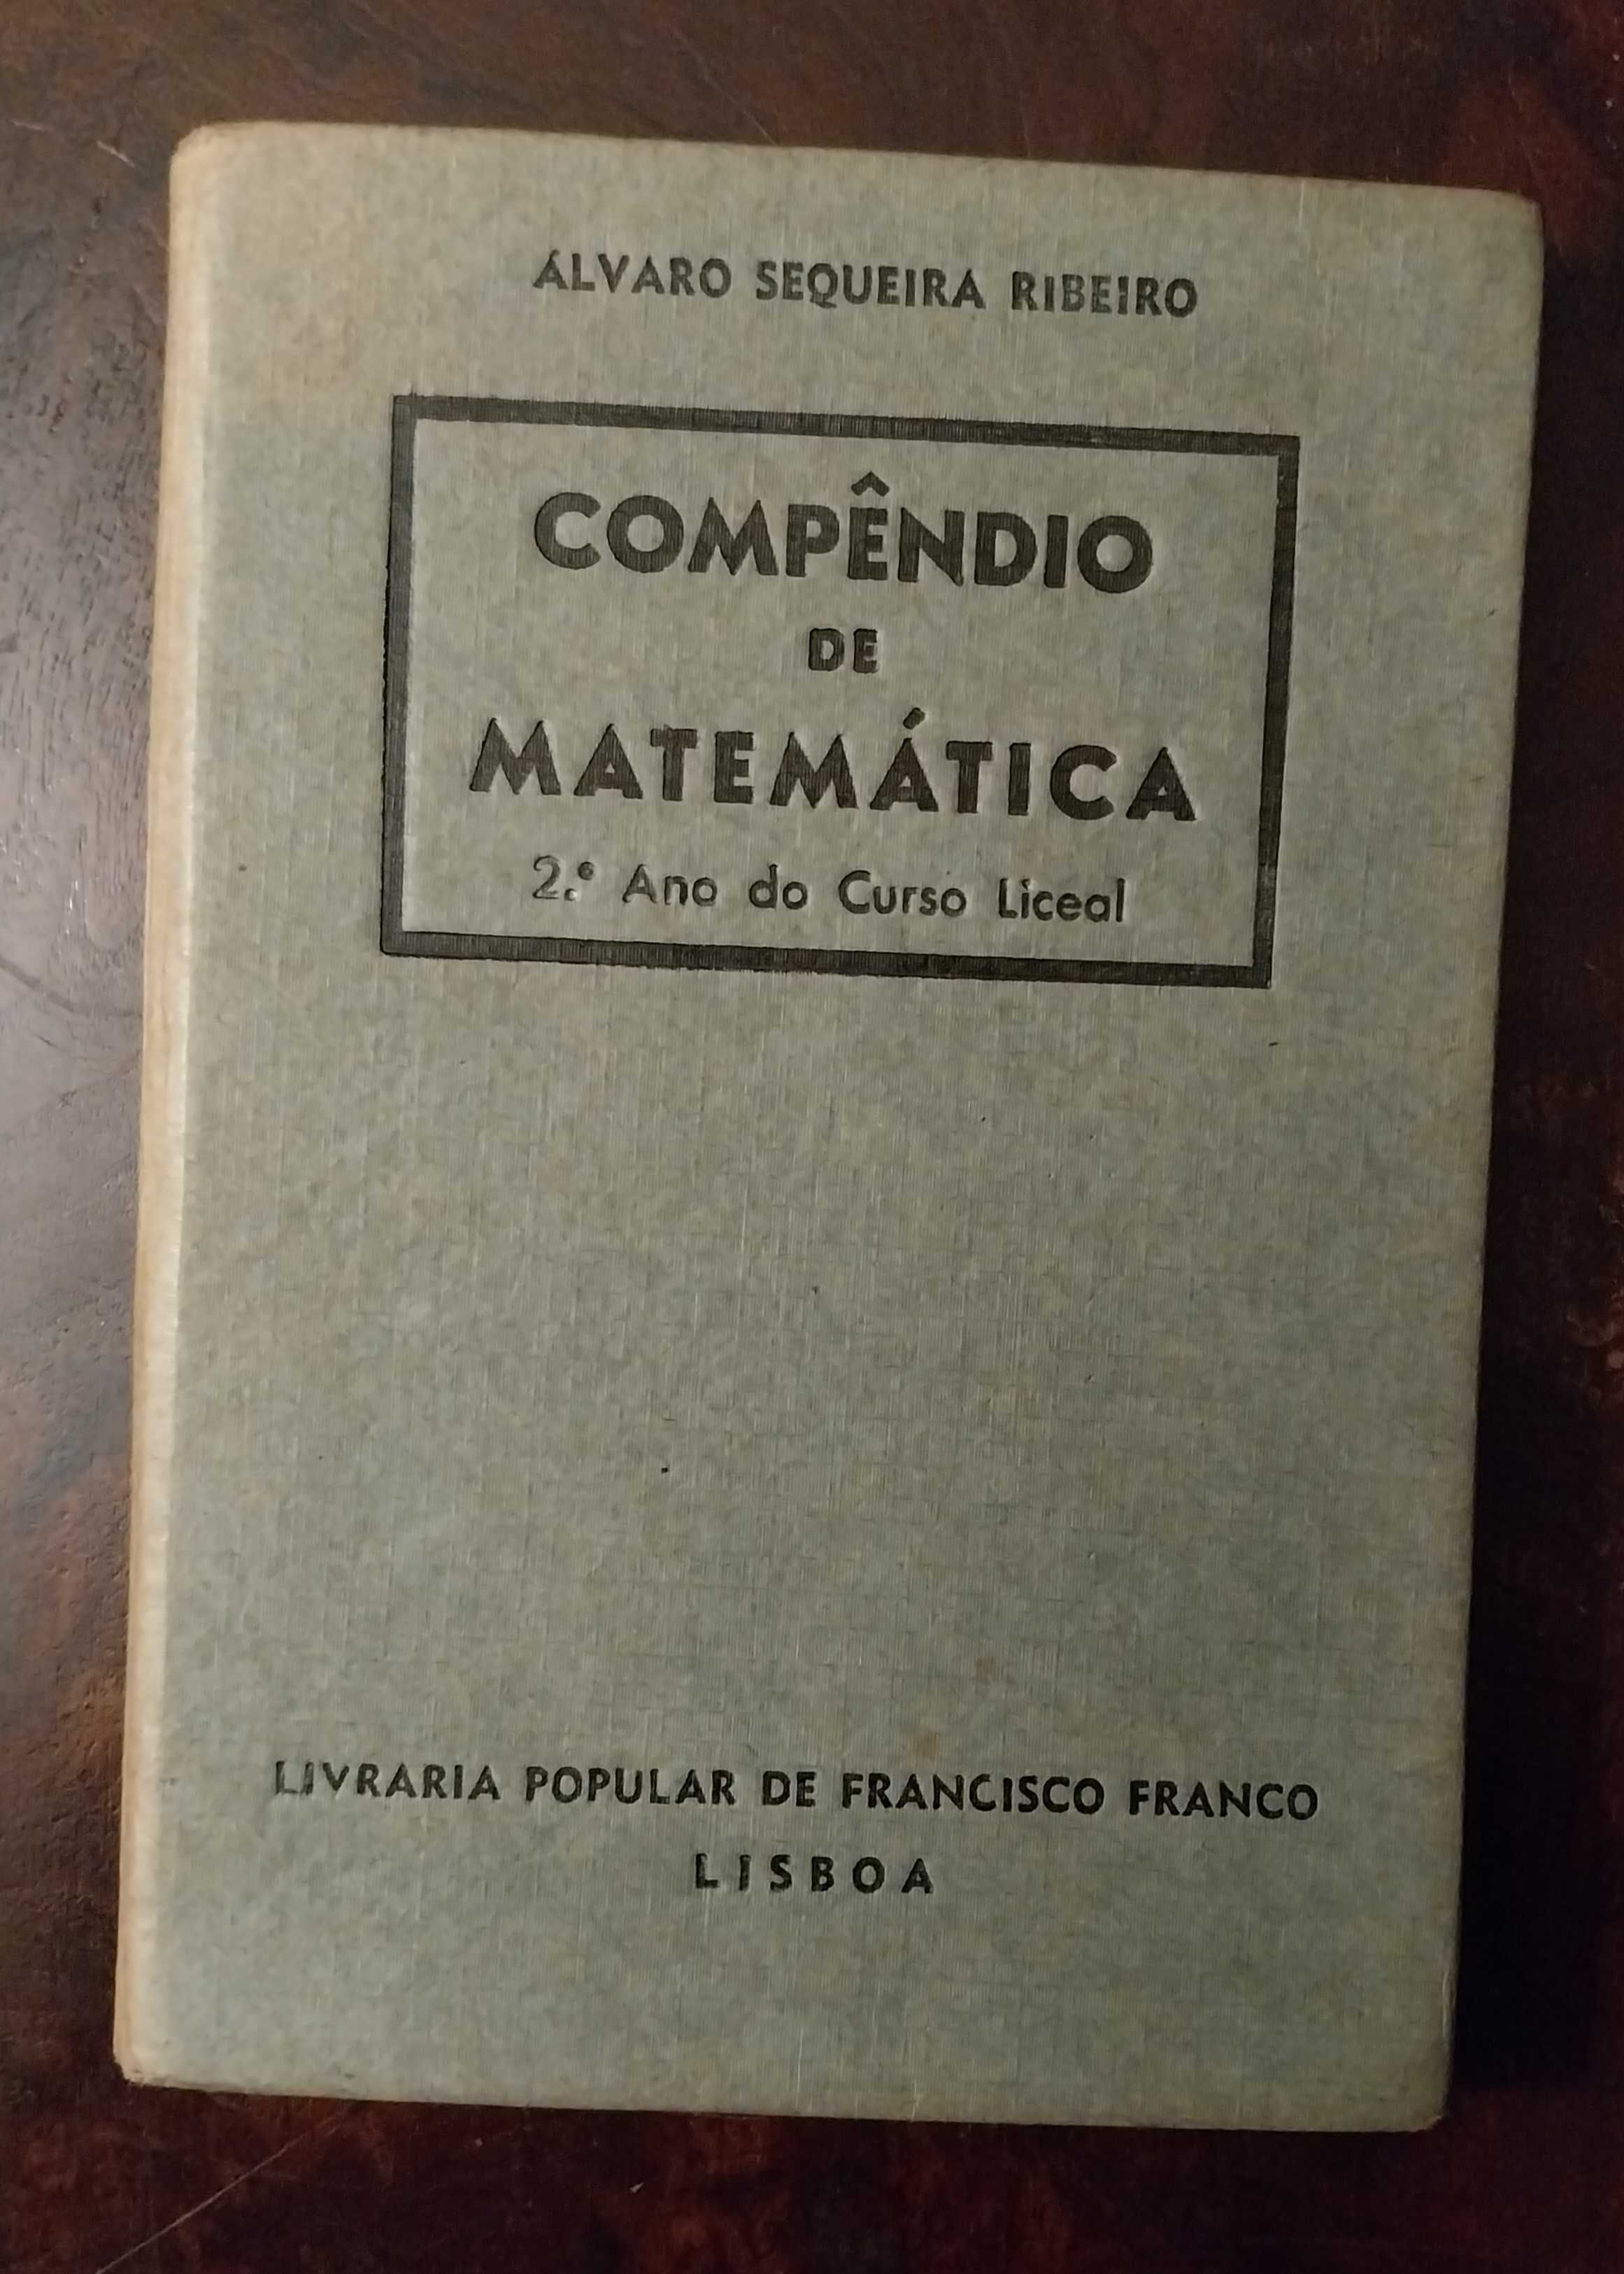 Compêndio de Matemática 2. Ano Curso Liceal - Livro antigo